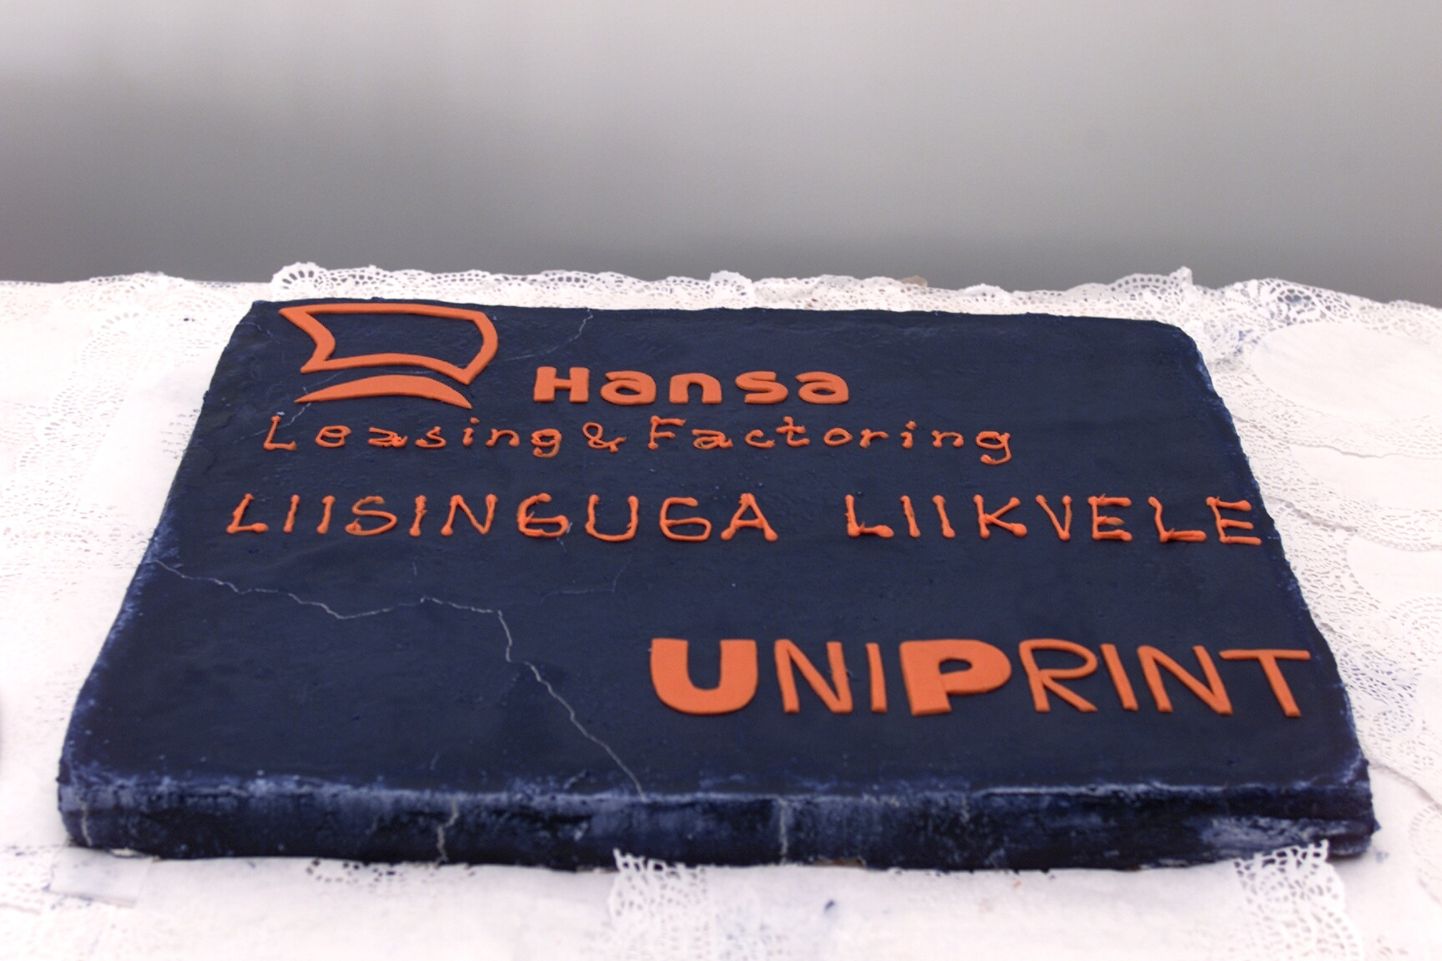 Почти 20 лет назад у Uniprint был повод для радости - покупка нового печатного станка.